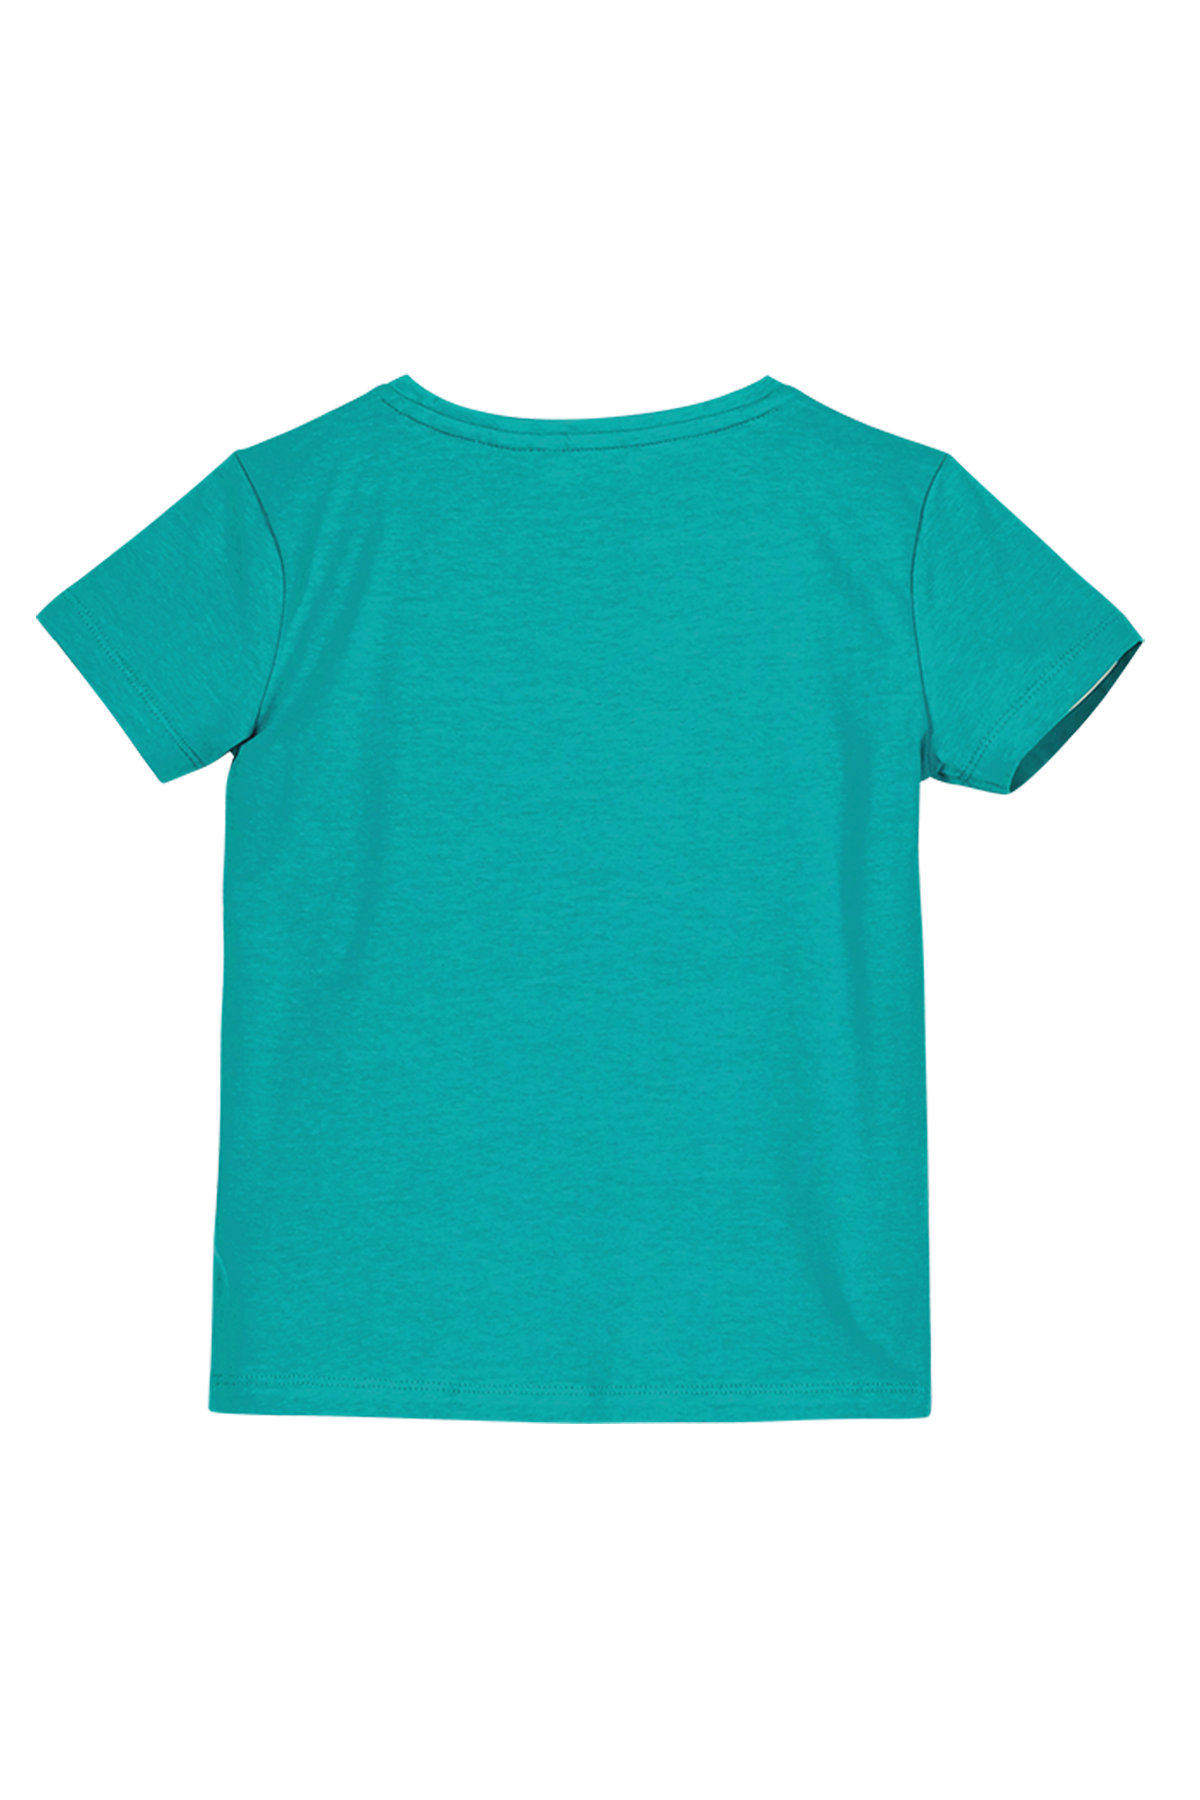 T-Shirt Girls t-shirt ciao print